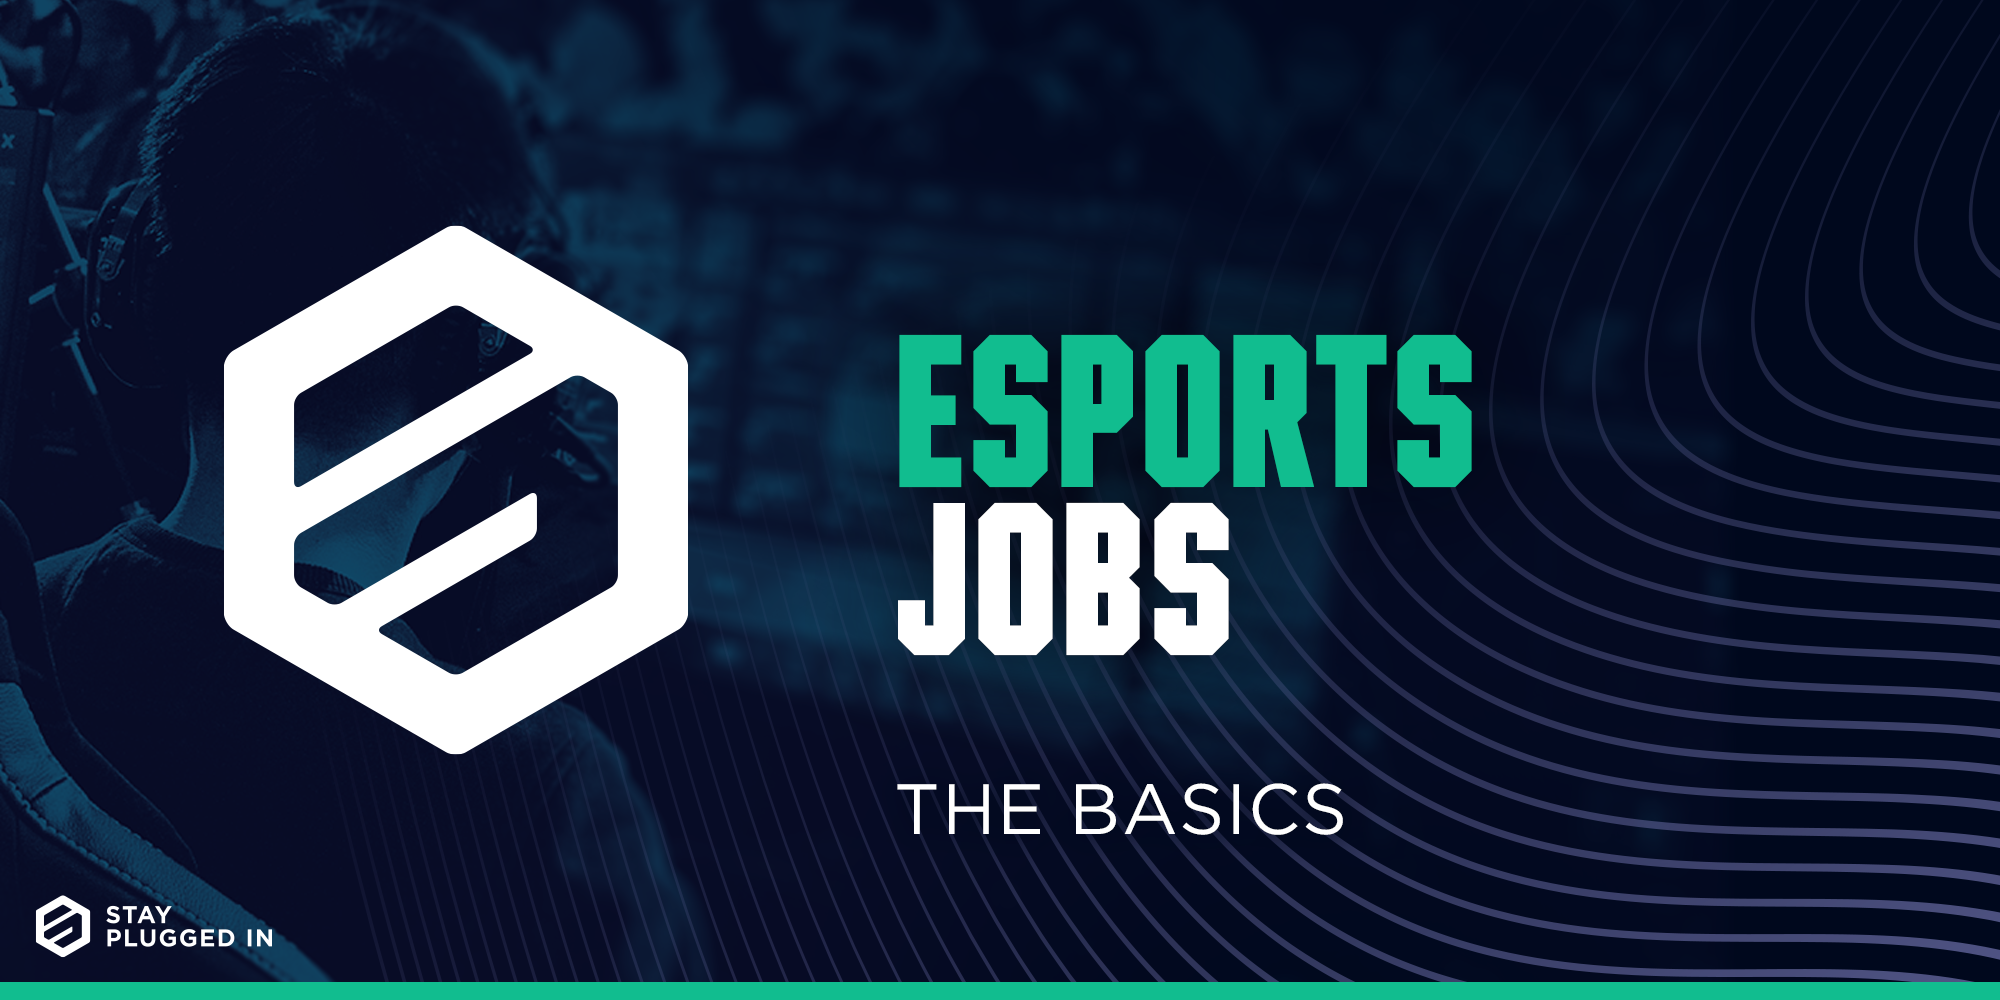 Esports Jobs: The basics